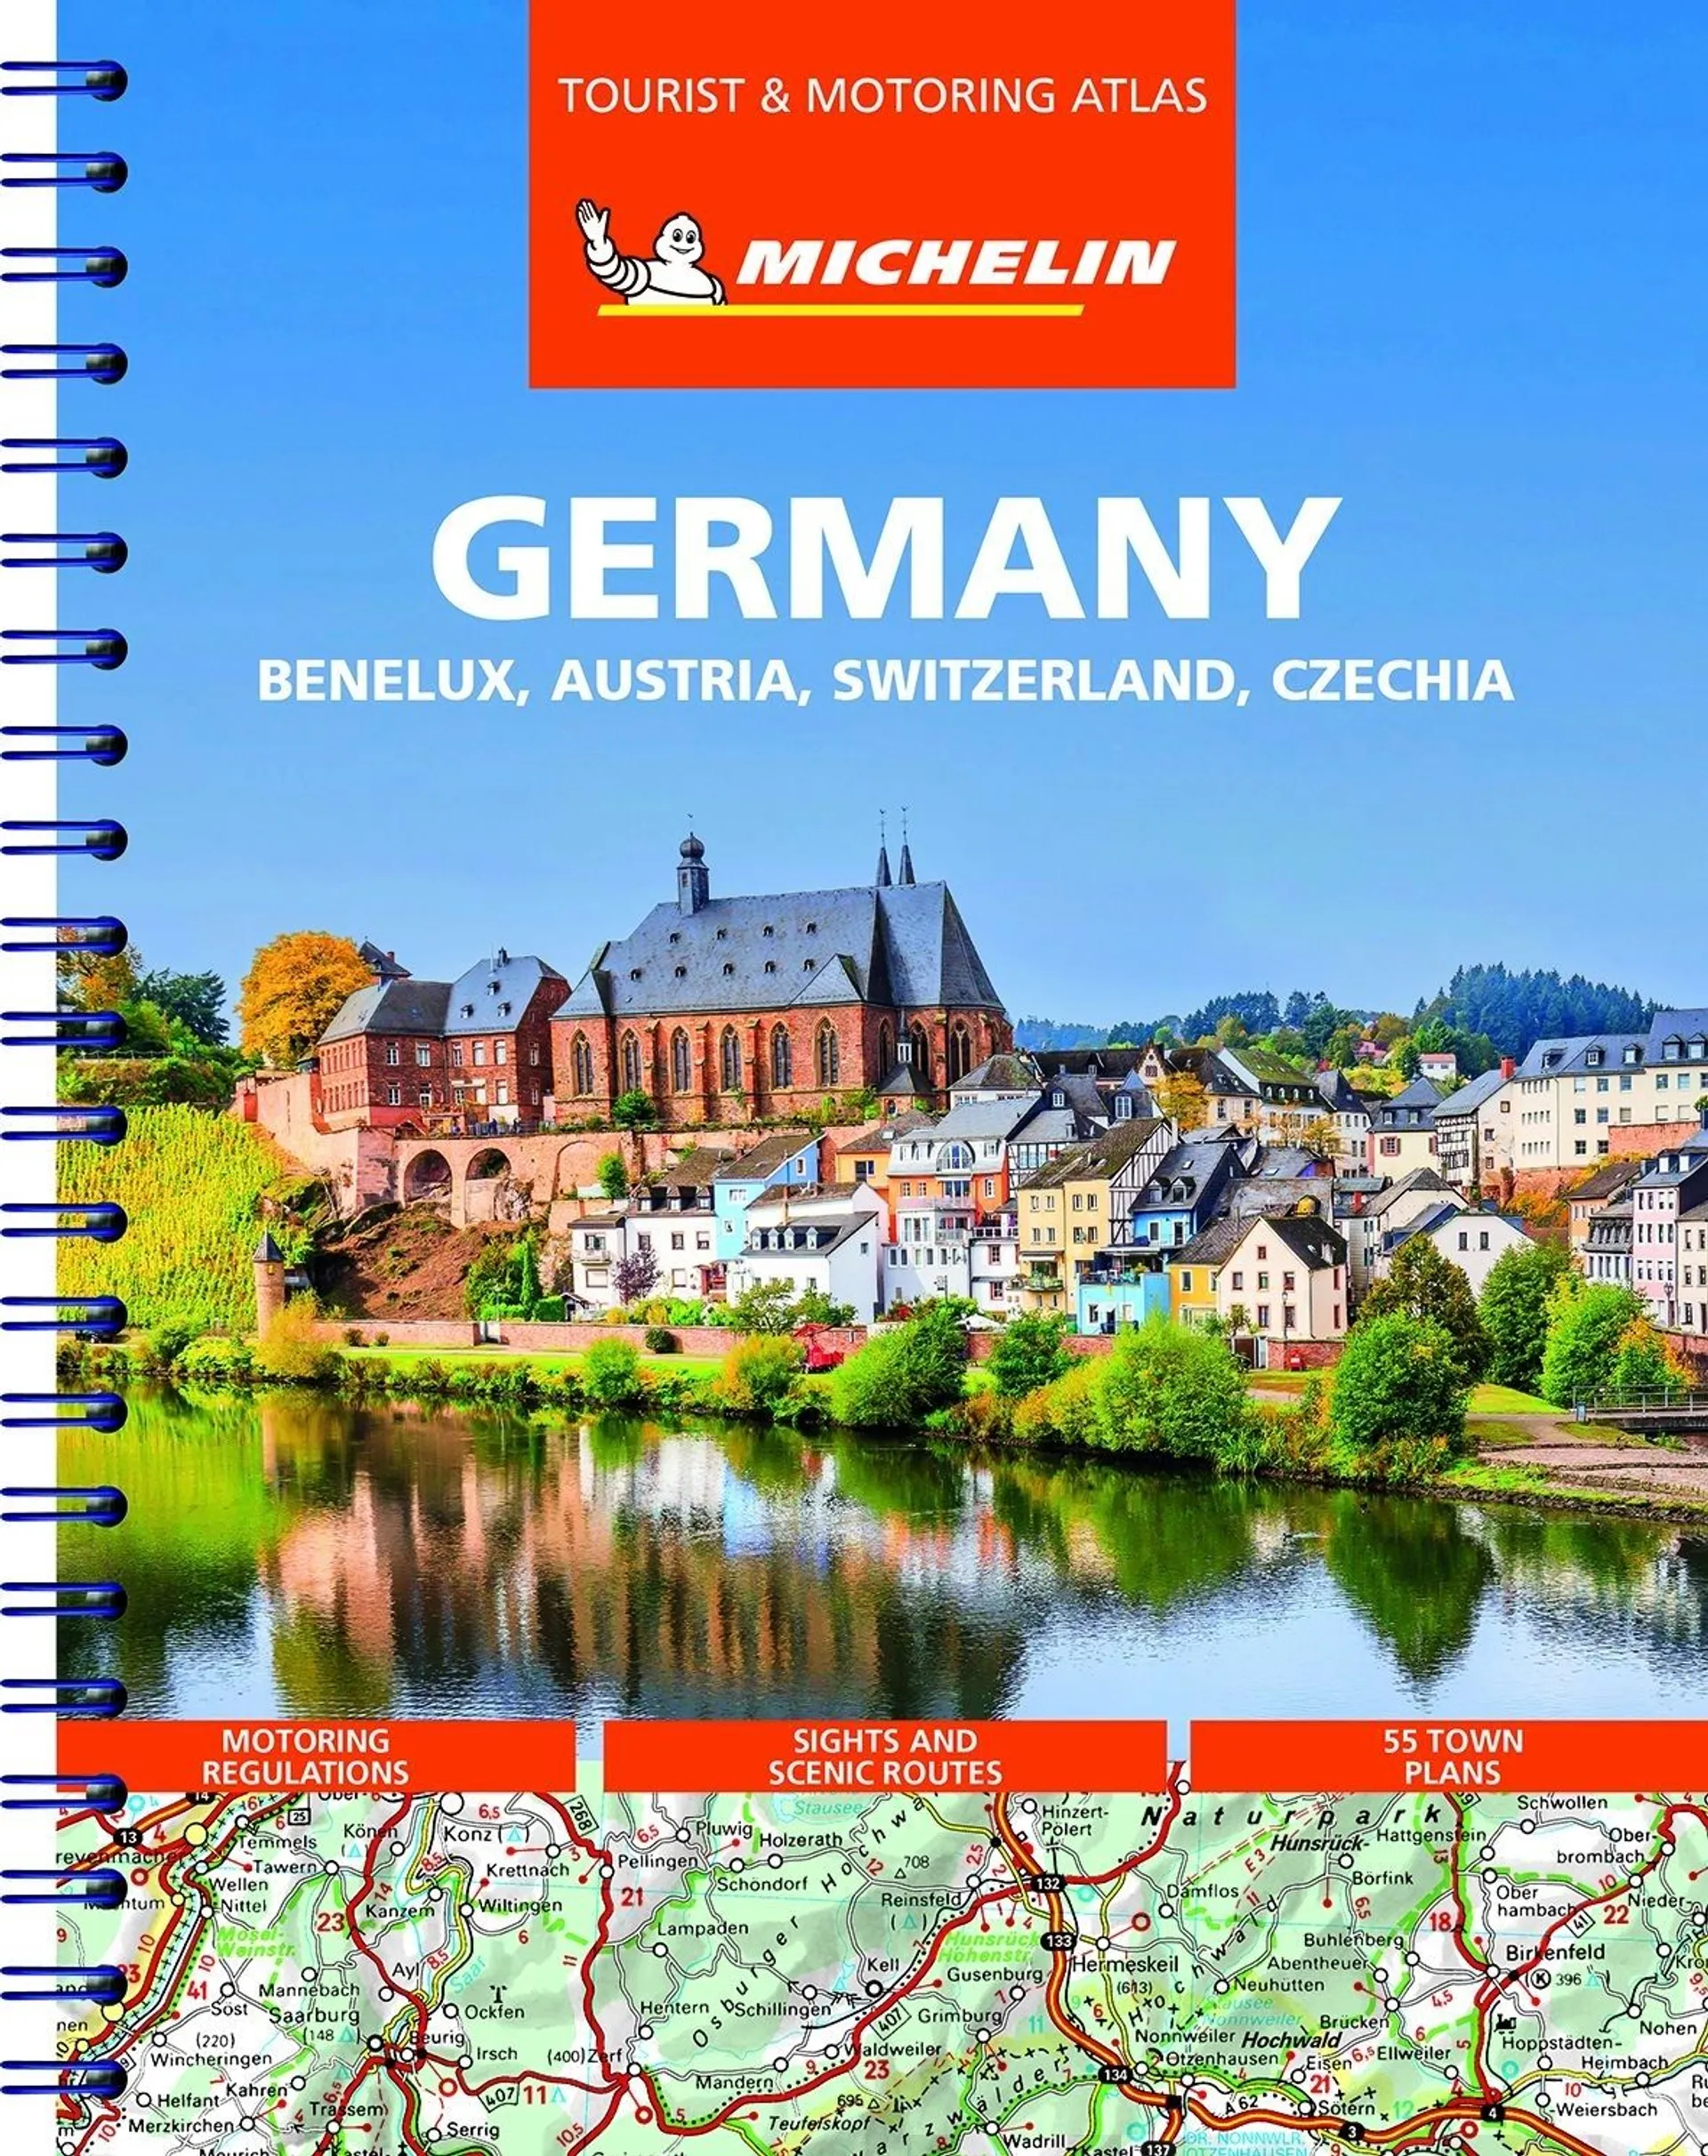 Germany, Benelux, Austria, Switzerland, Czech Republic - Tourist and Motoring Atlas / Saksa-Benelux-Itävalta-Sveitsi-Tšekki Michelin tiekartasto